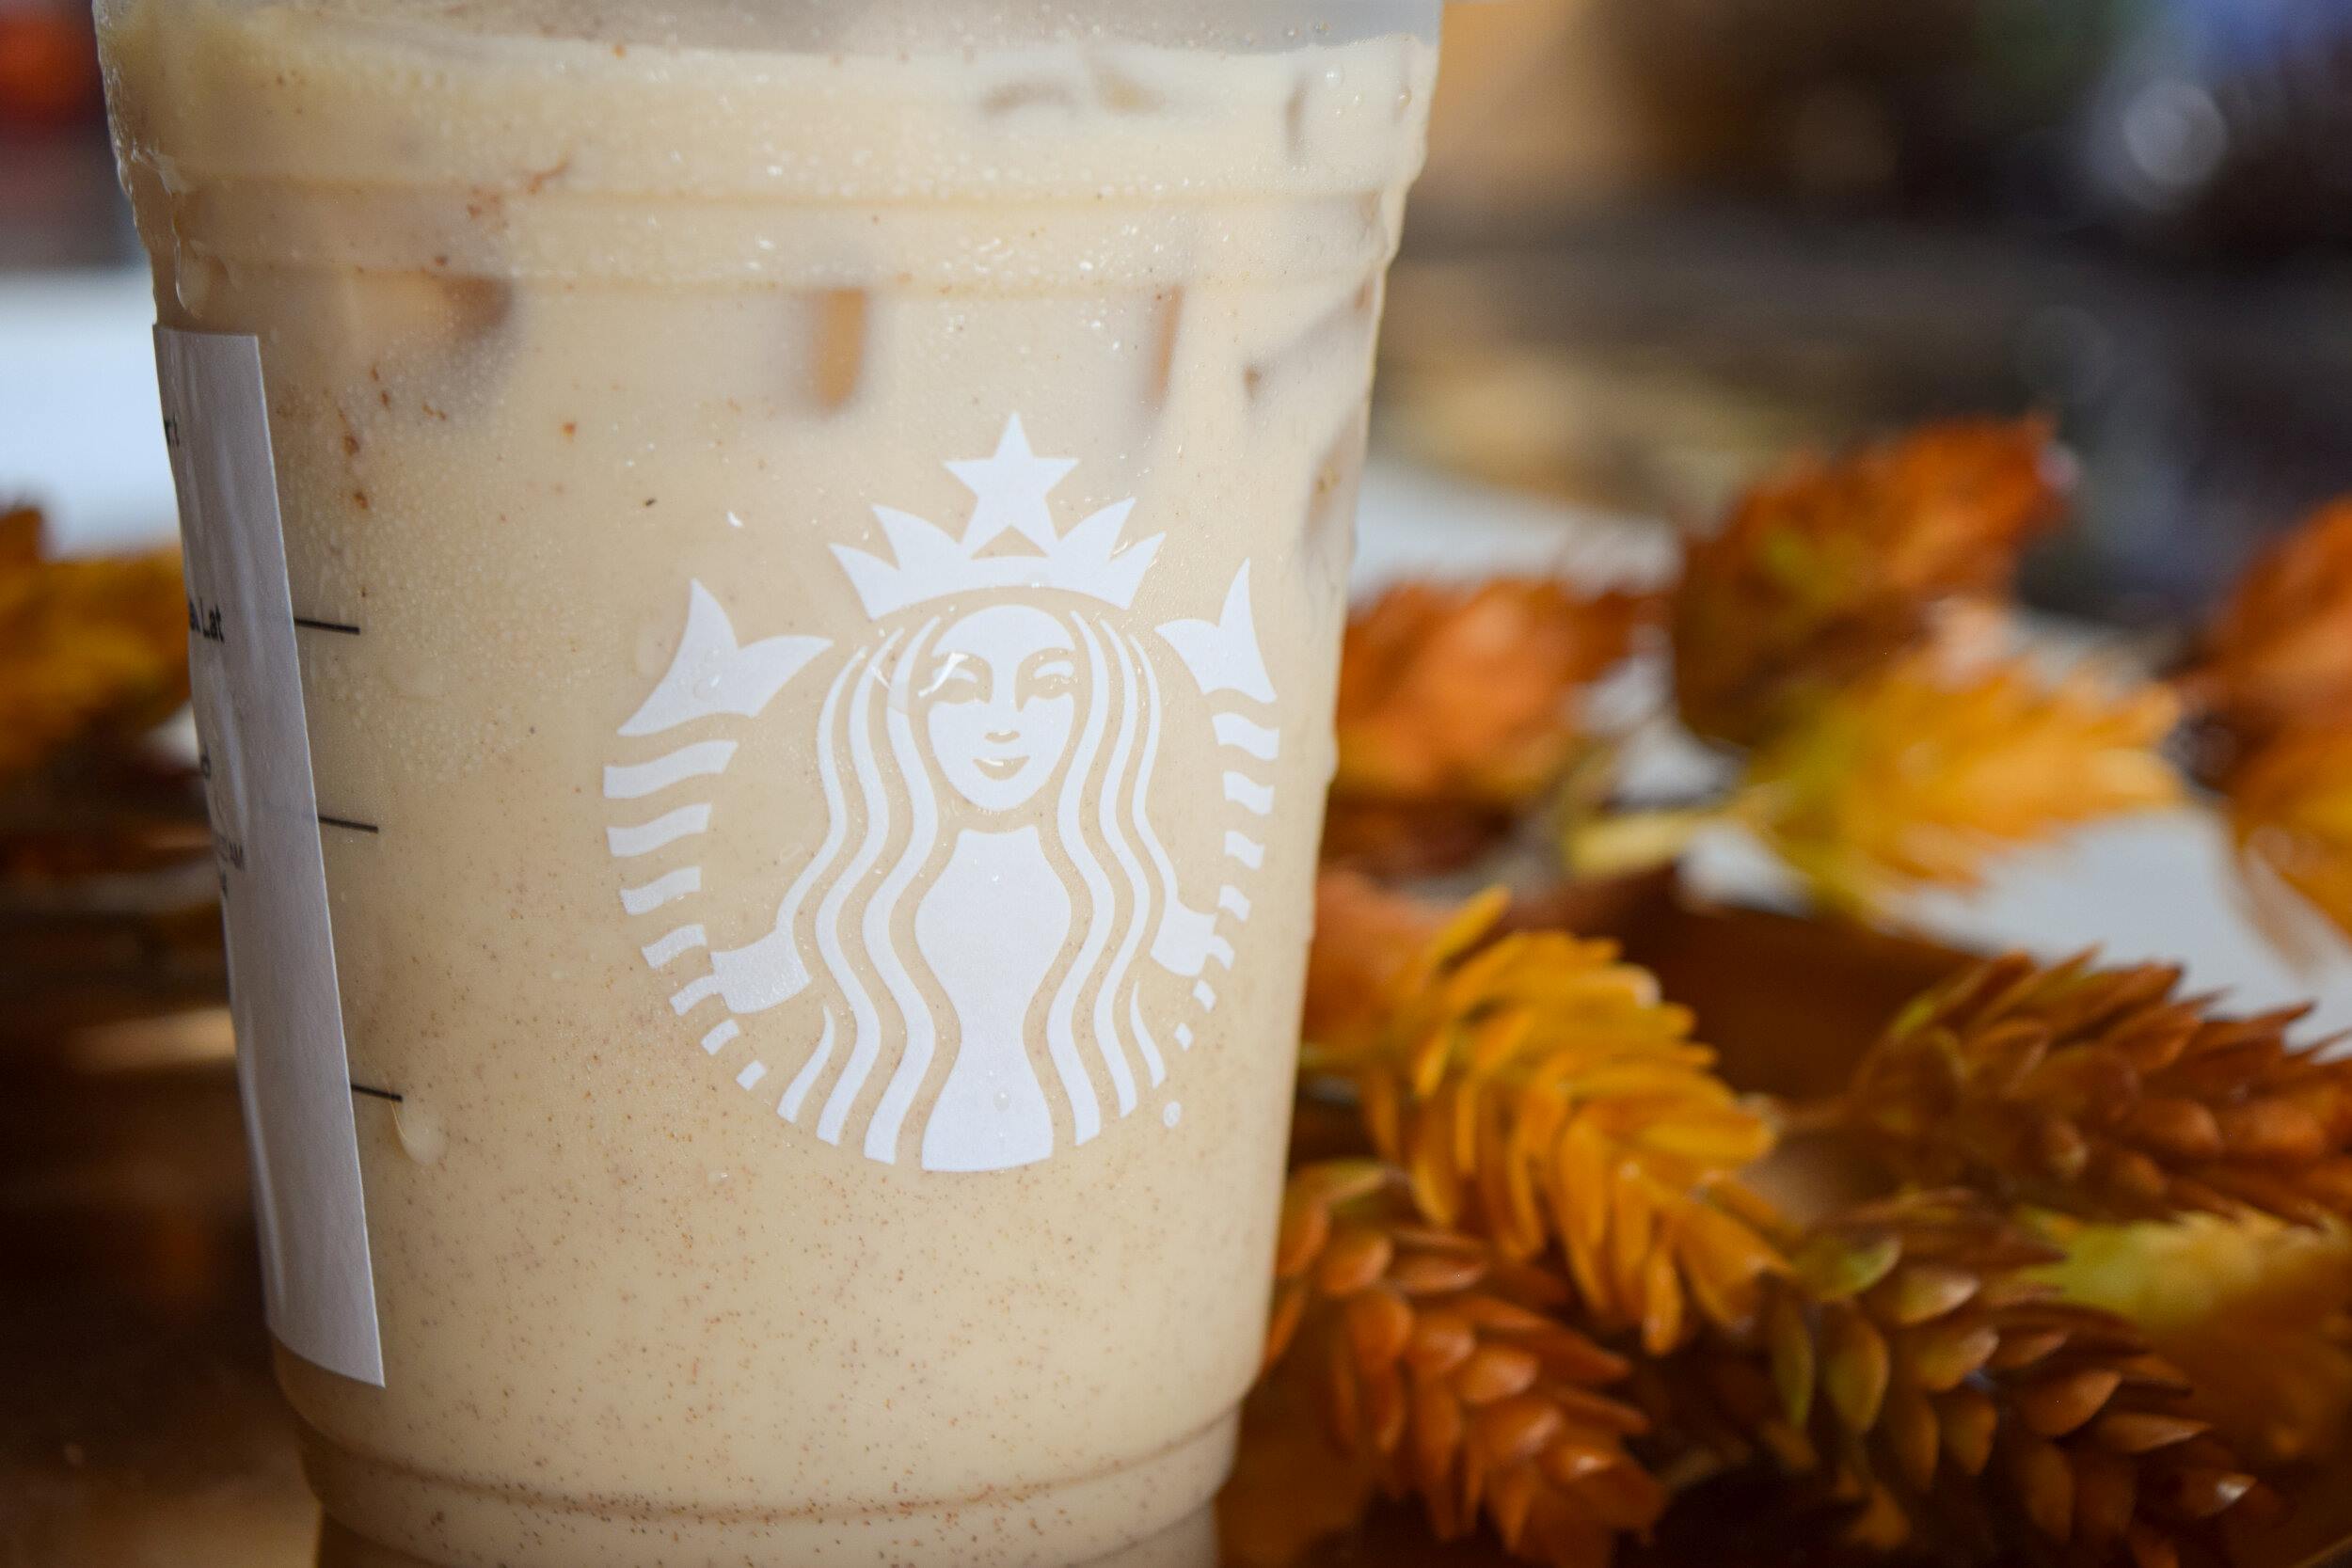 Is Starbucks Oat Milk Gluten Free? Dietary Restrictions